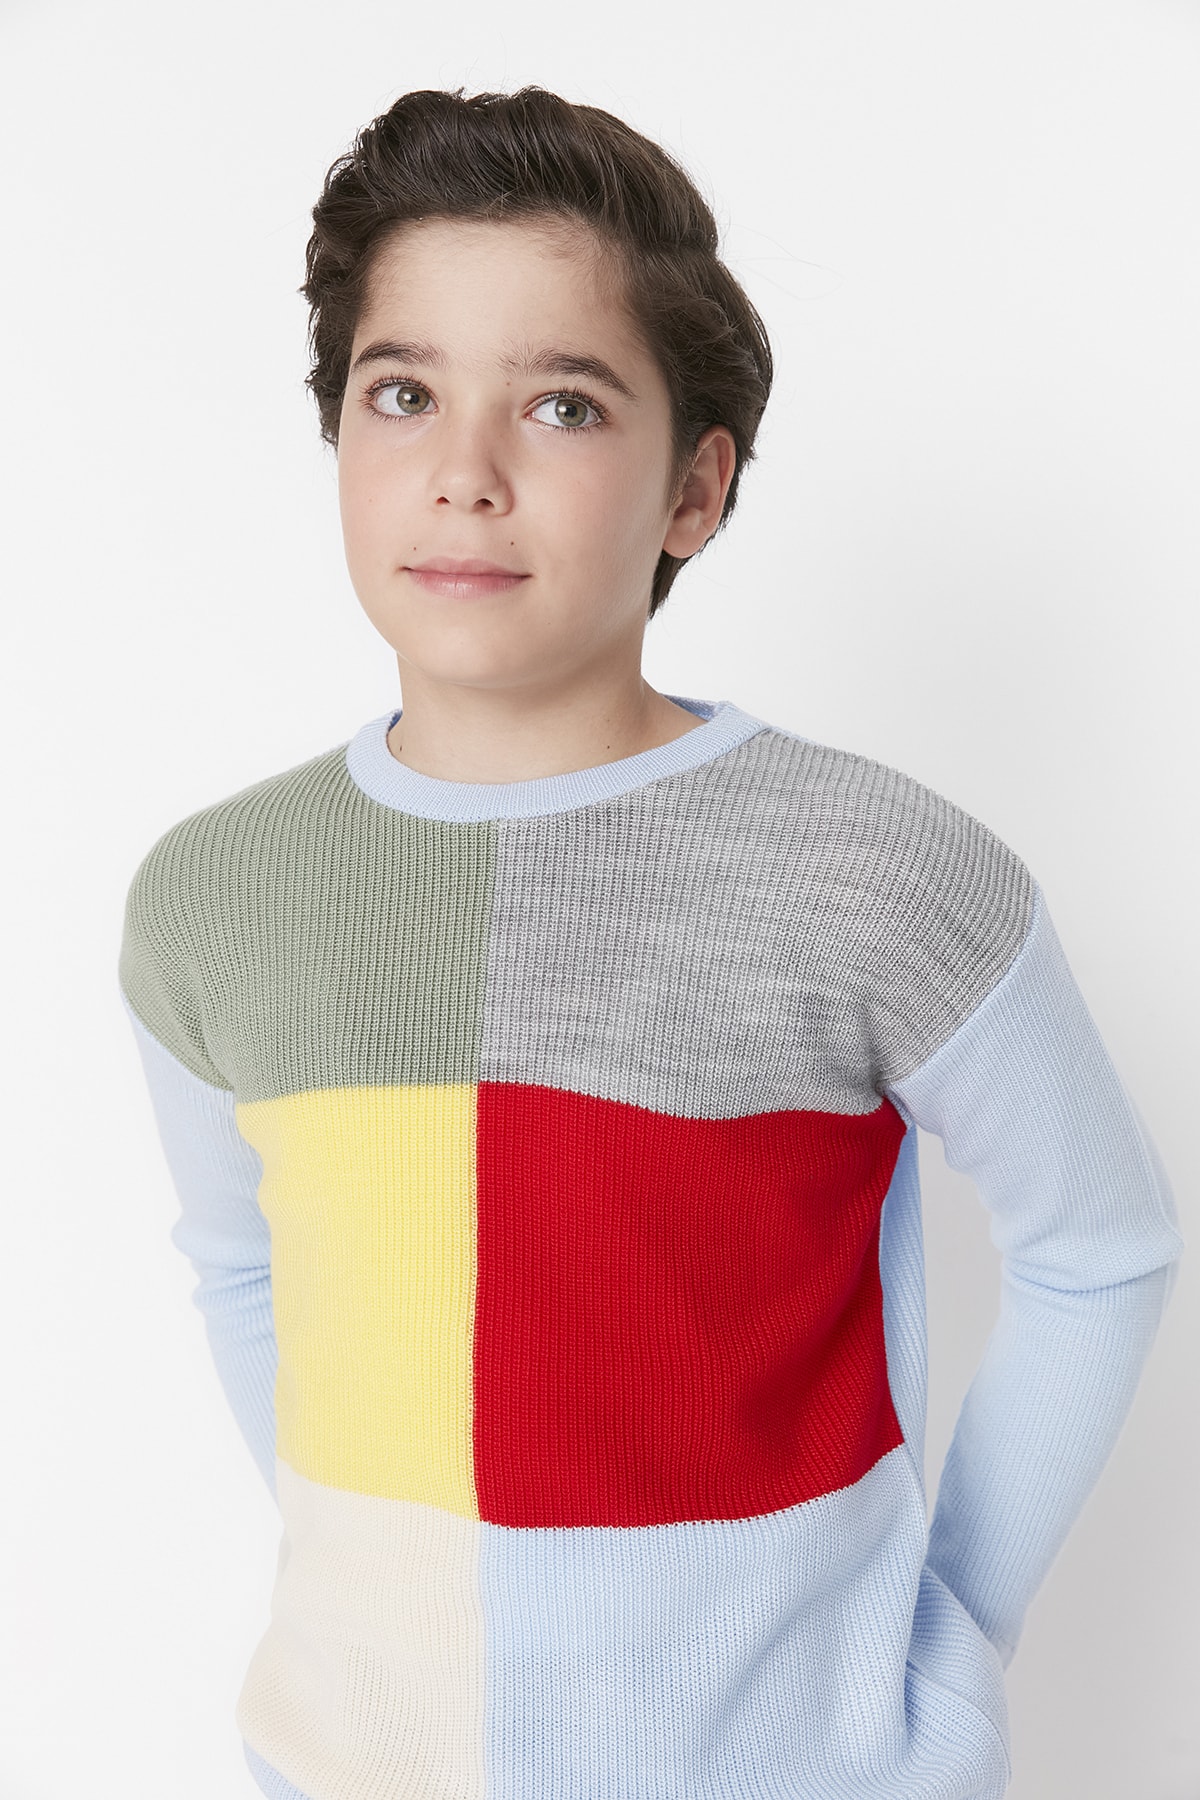 Trendyol Multicolored Boys' Knitwear Sweater